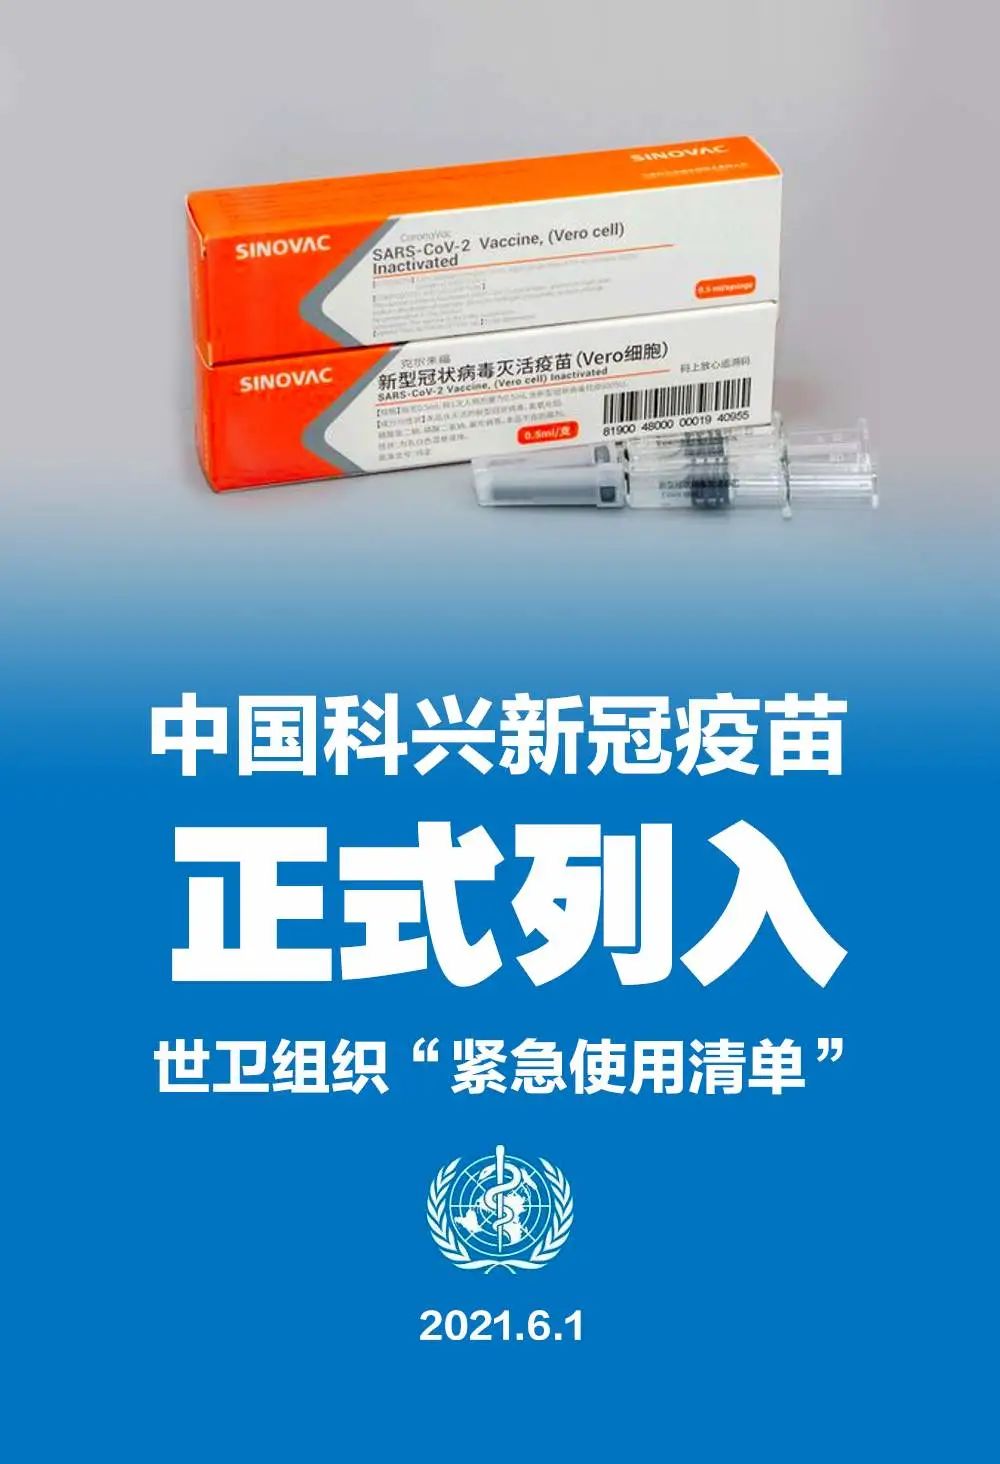 世衛組織將中國科興疫苗列入“緊急使用清單”